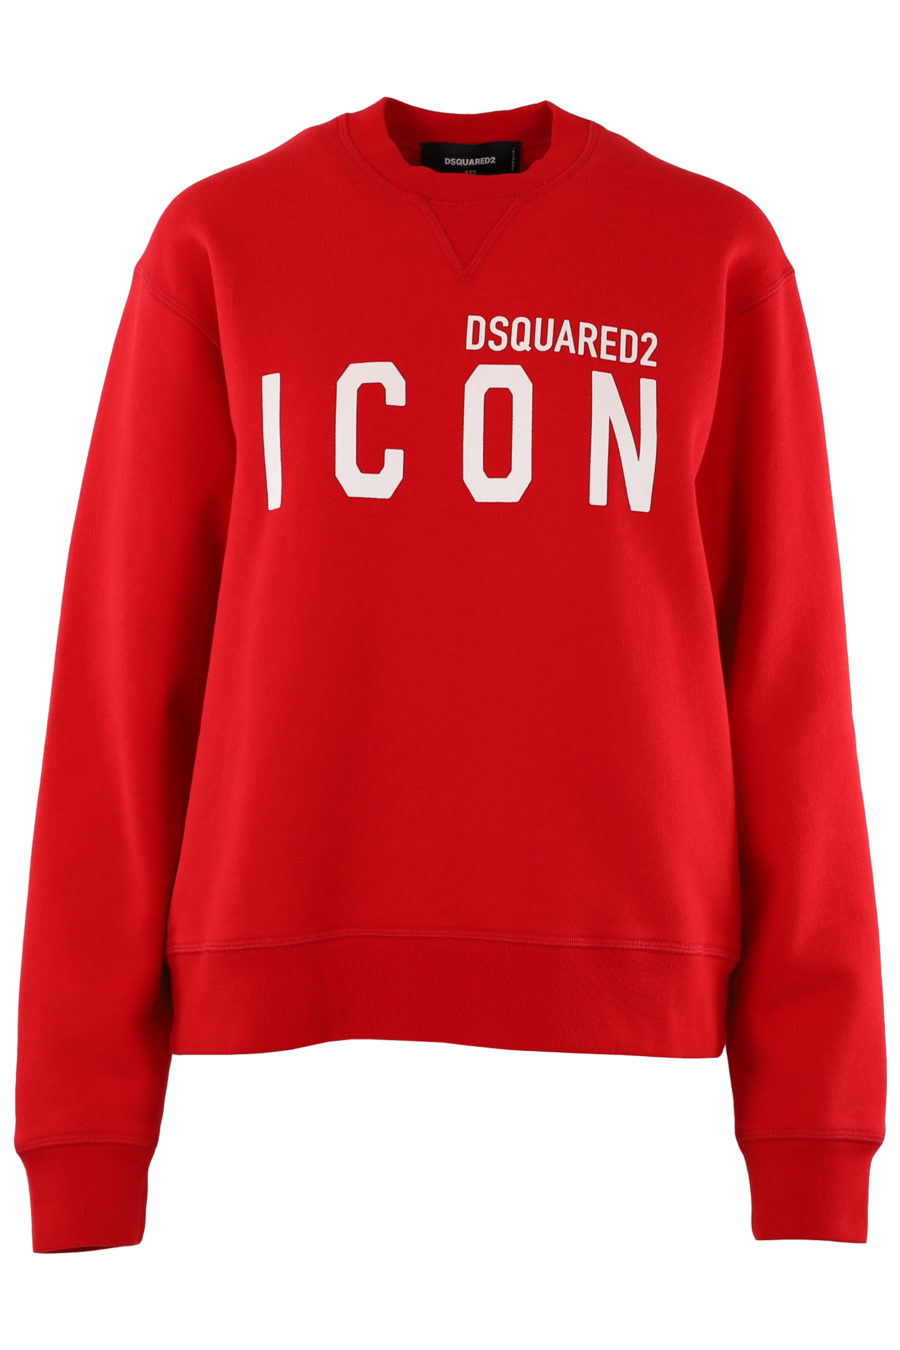 Red sweatshirt with white "Icon" logo - 3f7cef8f3380f2b29744d5cca9afb0b1dedb44cf